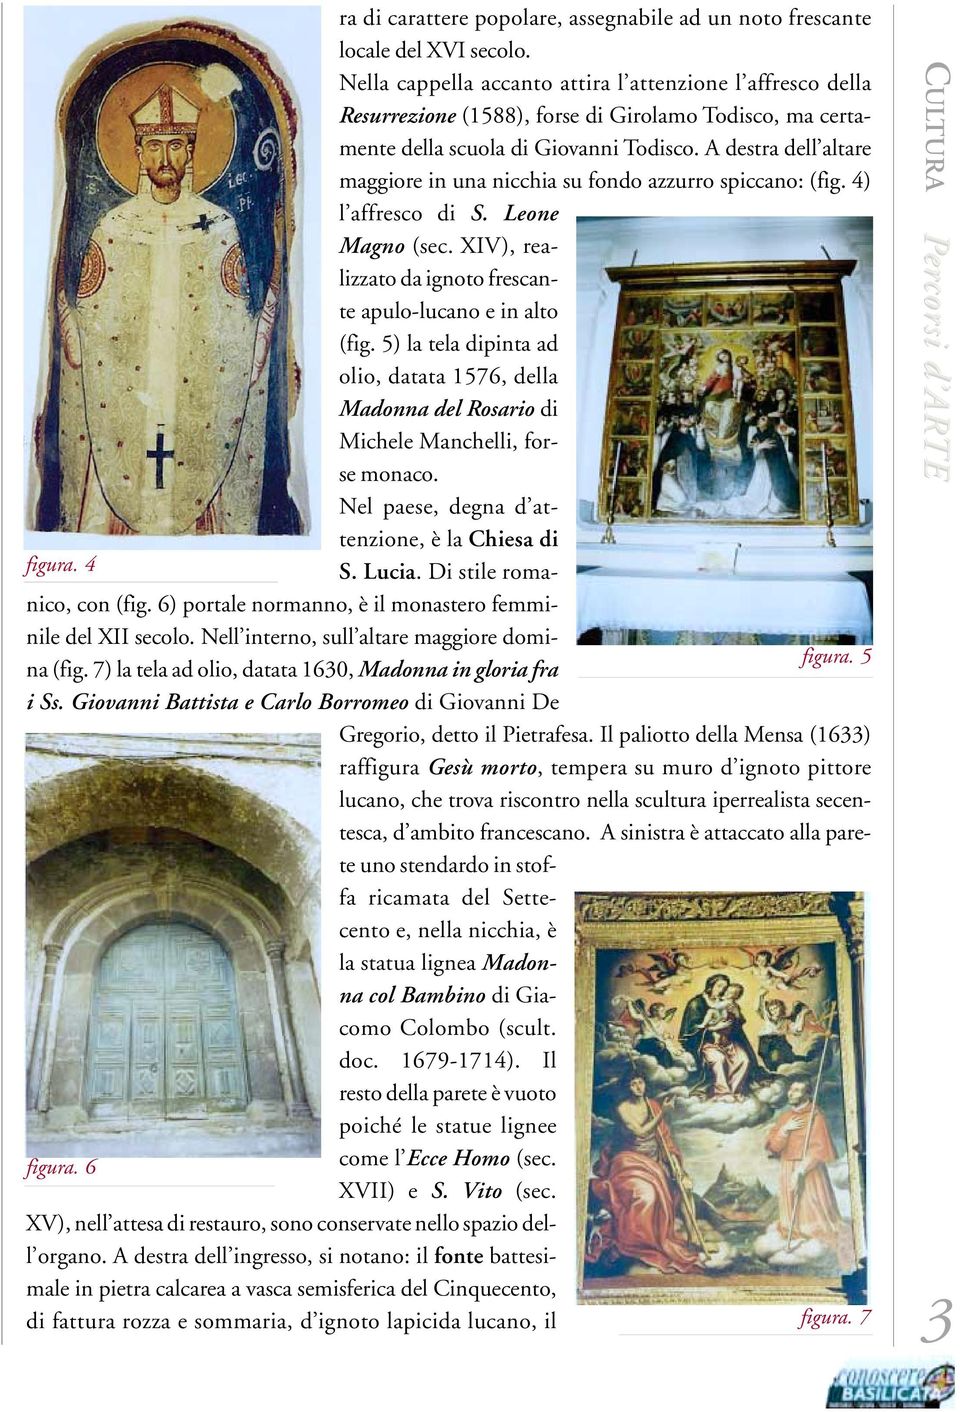 A destra dell altare maggiore in una nicchia su fondo azzurro spiccano: (fig. 4) l affresco di S. Leone Magno (sec. XIV), realizzato da ignoto frescante apulo-lucano e in alto (fig.